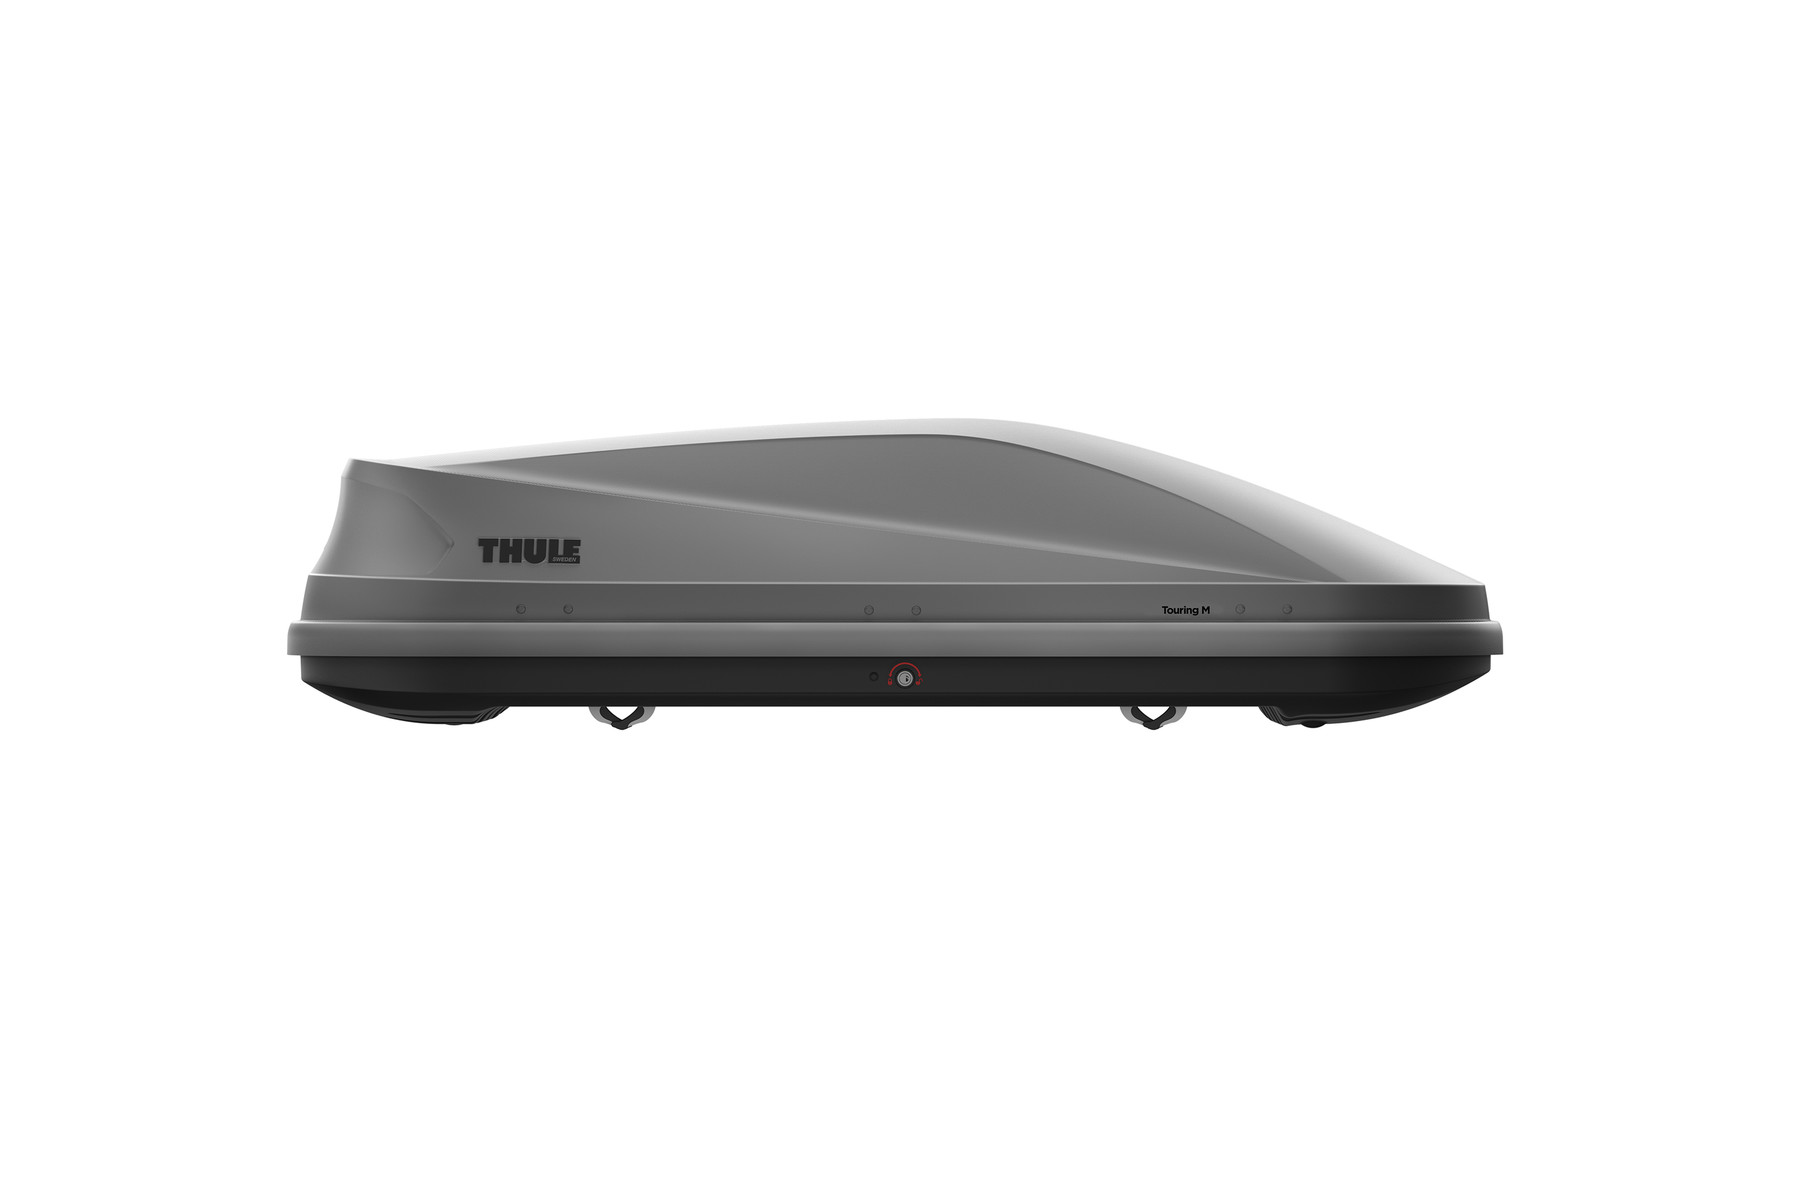 Автомобильный бокс Thule Touring M (200) титан 400л. (634200) автобокс на крышу koffer 430 литров размер 1780х720х450 черный глянец kbg430